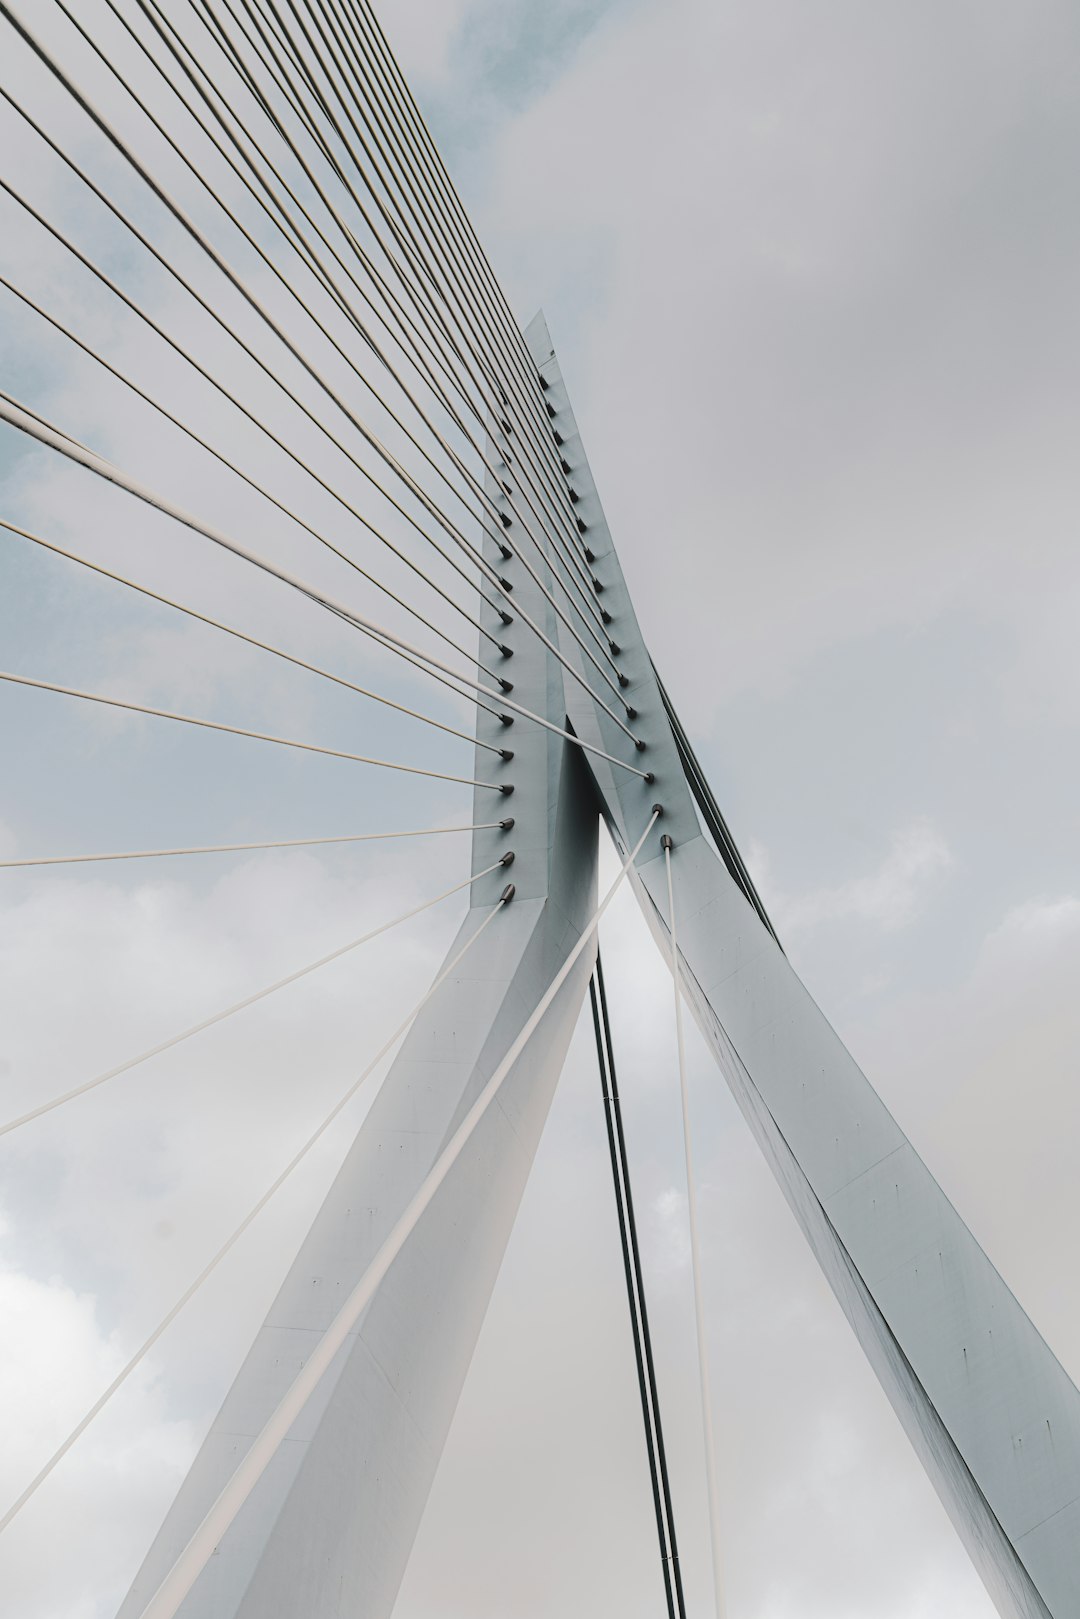 Suspension bridge photo spot Rotterdam Willemsbrug